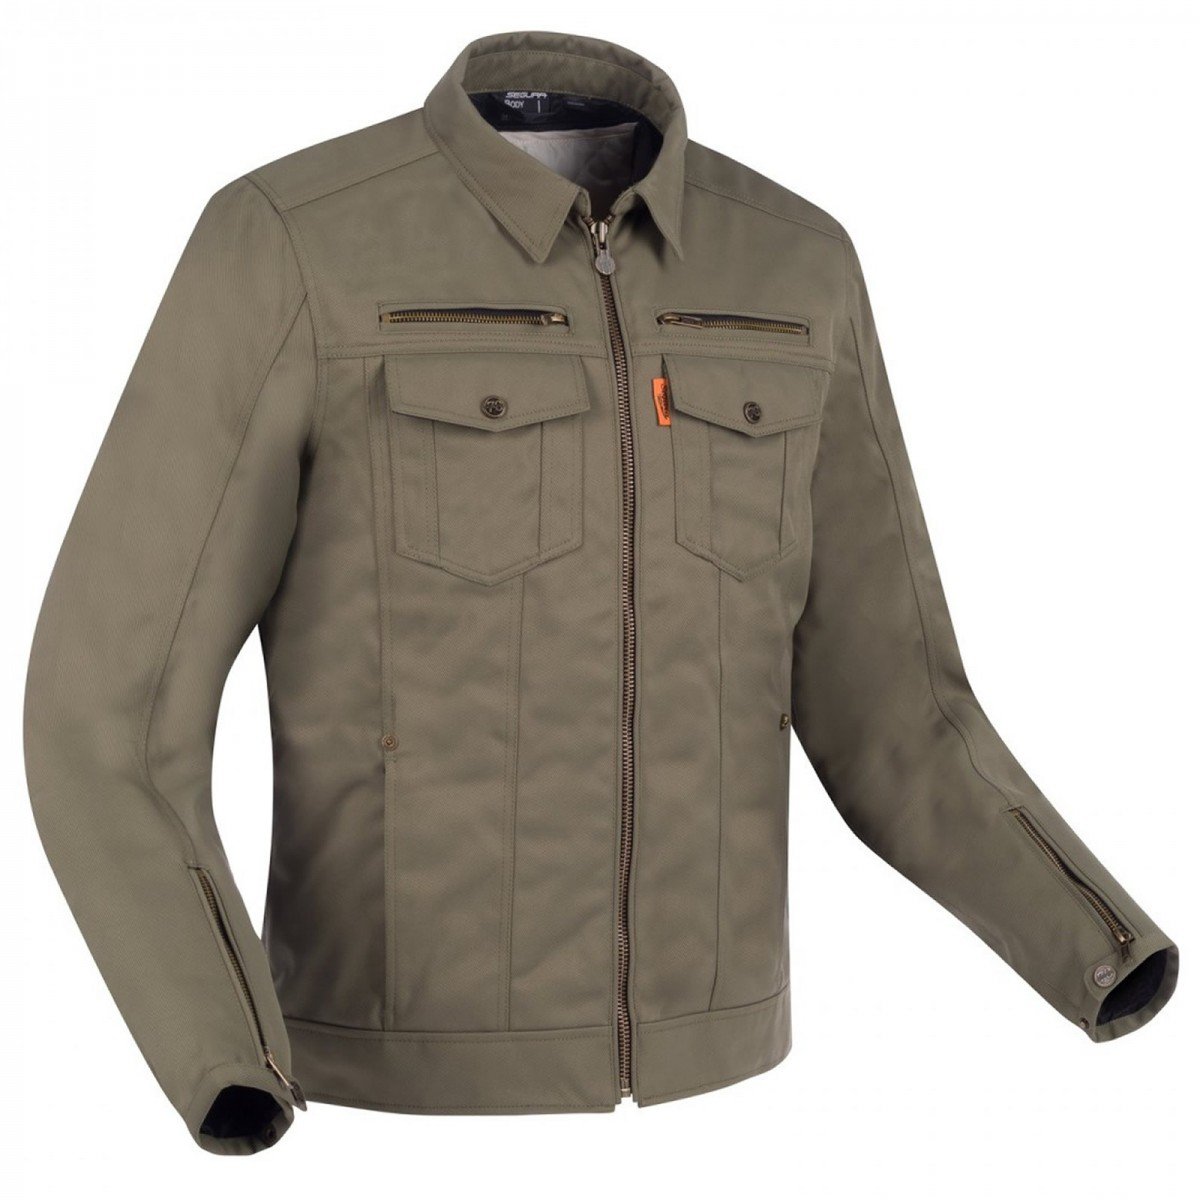 Image of Segura Patrol Jacket Khaki Size 3XL ID 3660815163085